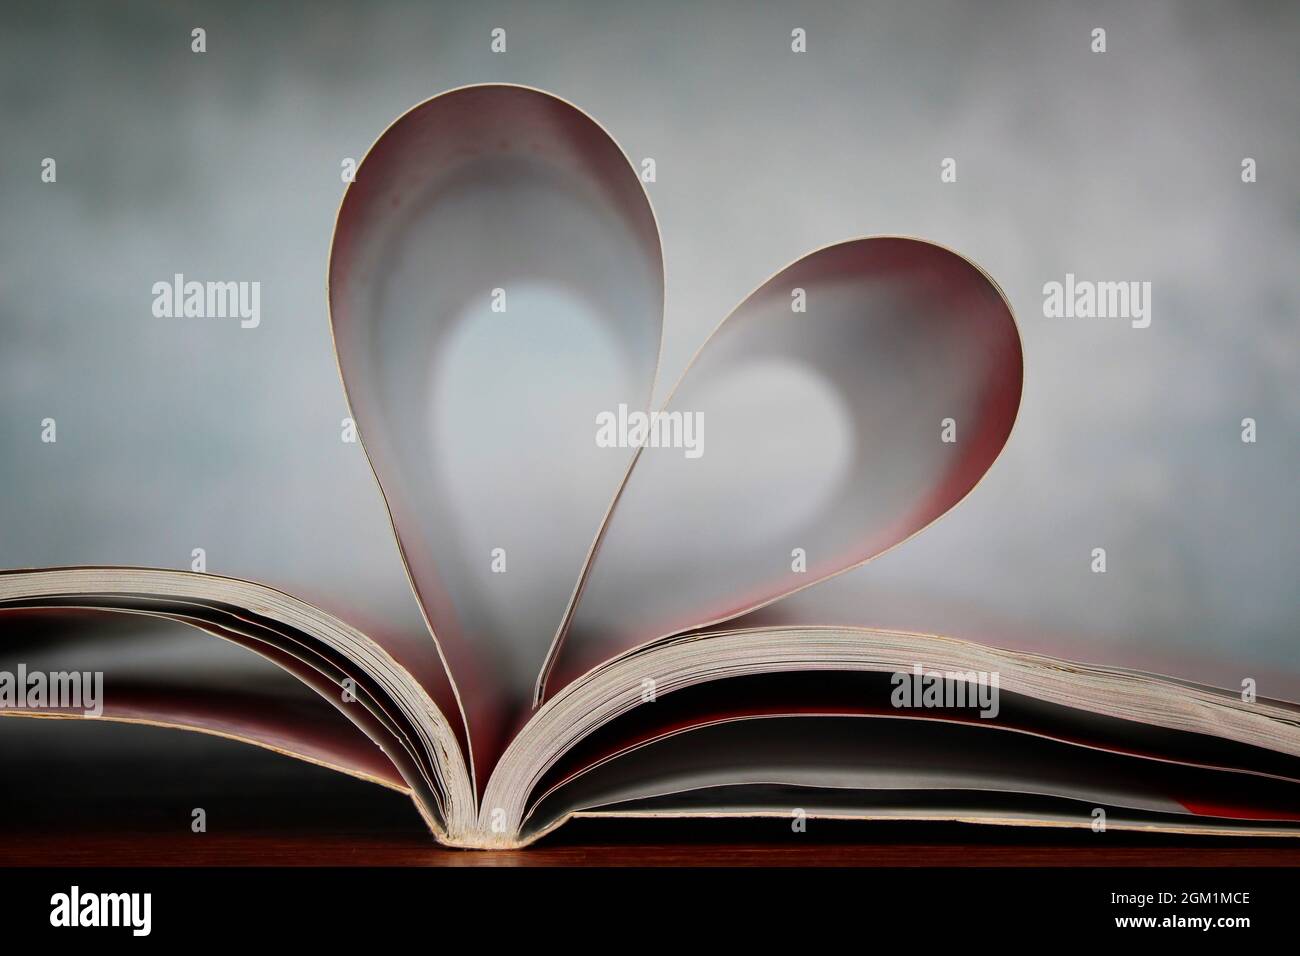 Romantique, concept d'amour. Forme de coeur faite à partir des pages d'un livre Banque D'Images